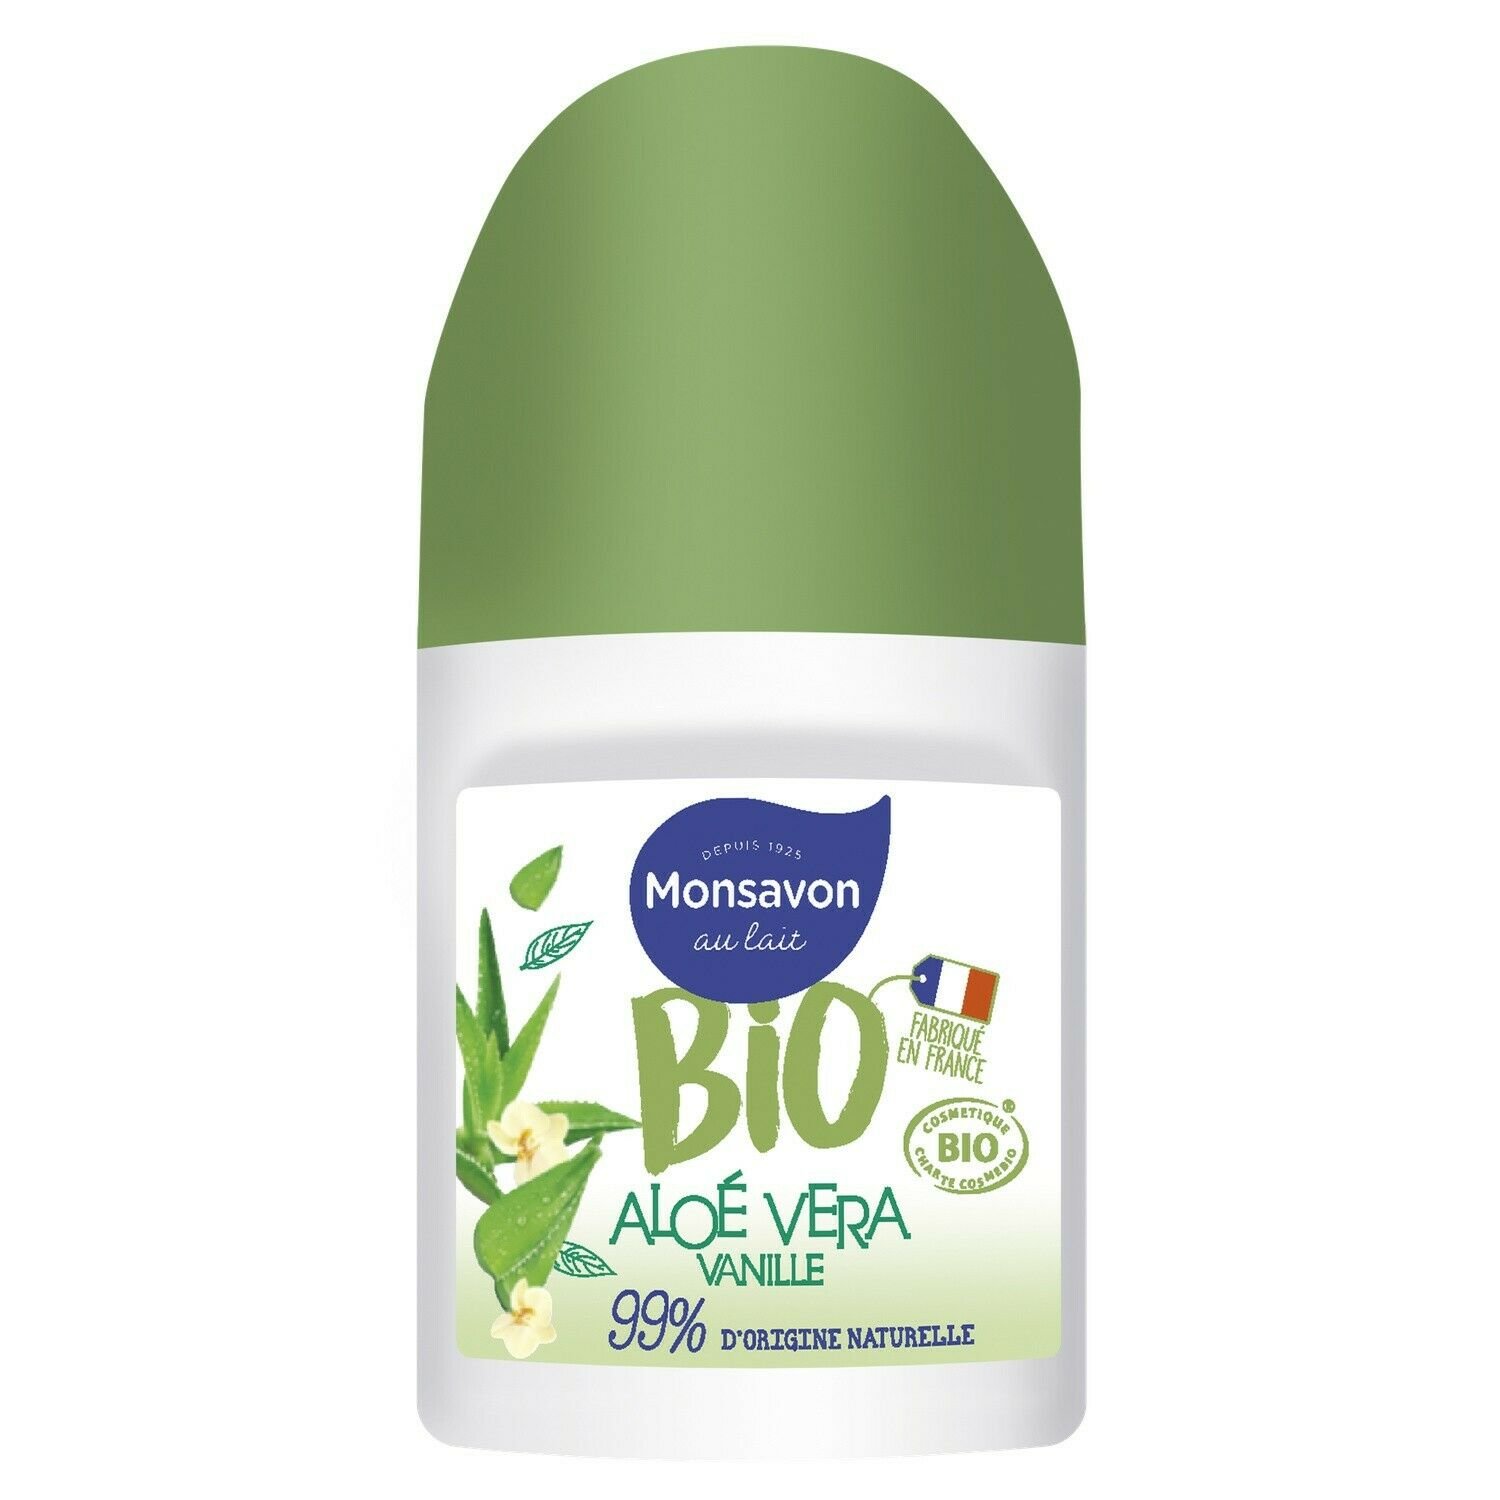 lot 3 MONSAVON roll on organic aloe vera vanilla deodorant roll on 50 ml